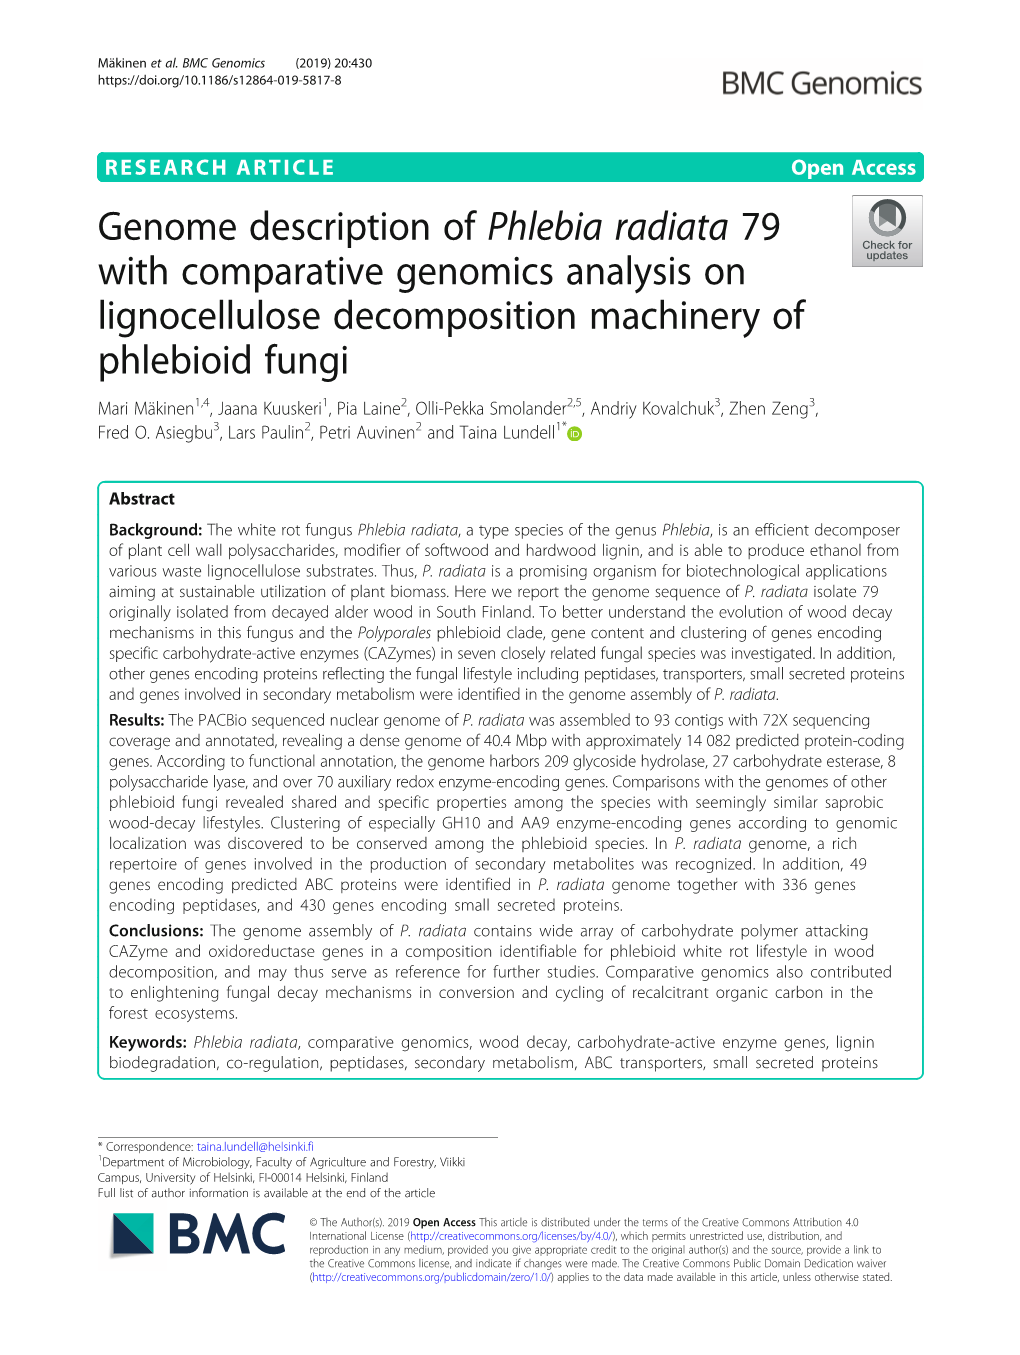 Genome Description of Phlebia Radiata 79 with Comparative Genomics